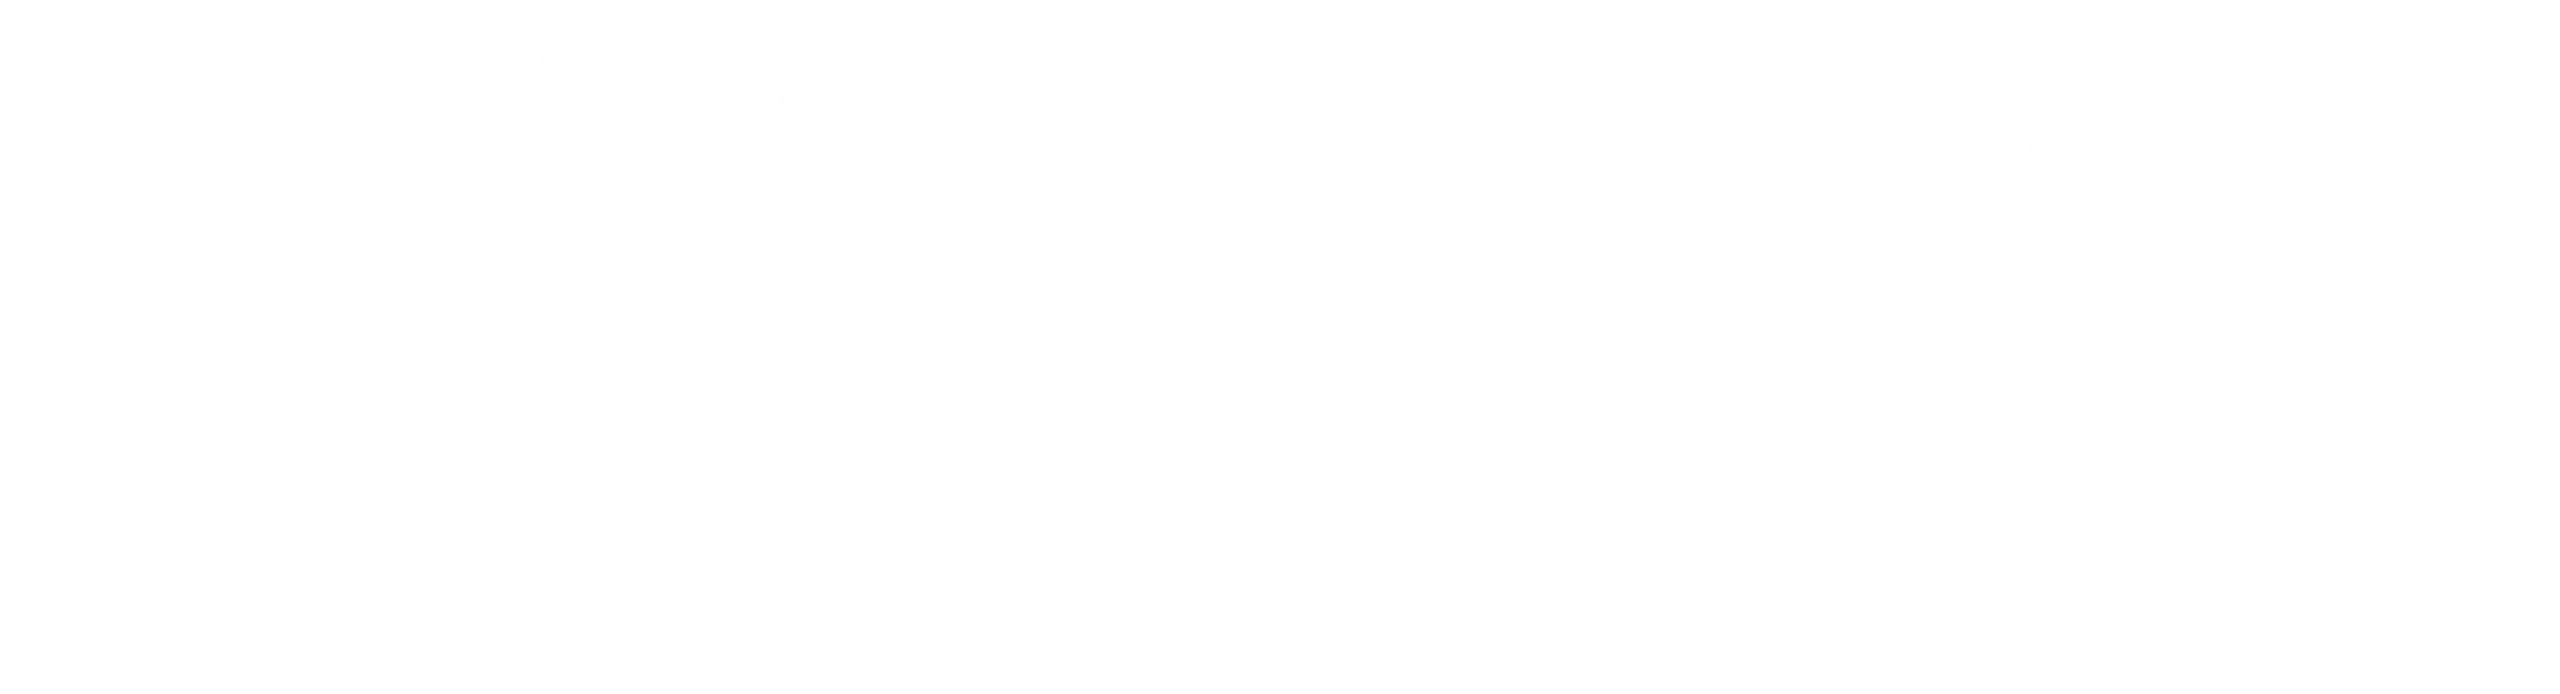 Operatore-Specializzato-in-Tecniche-Manuali-Integrate-e-Medicine-Complementari